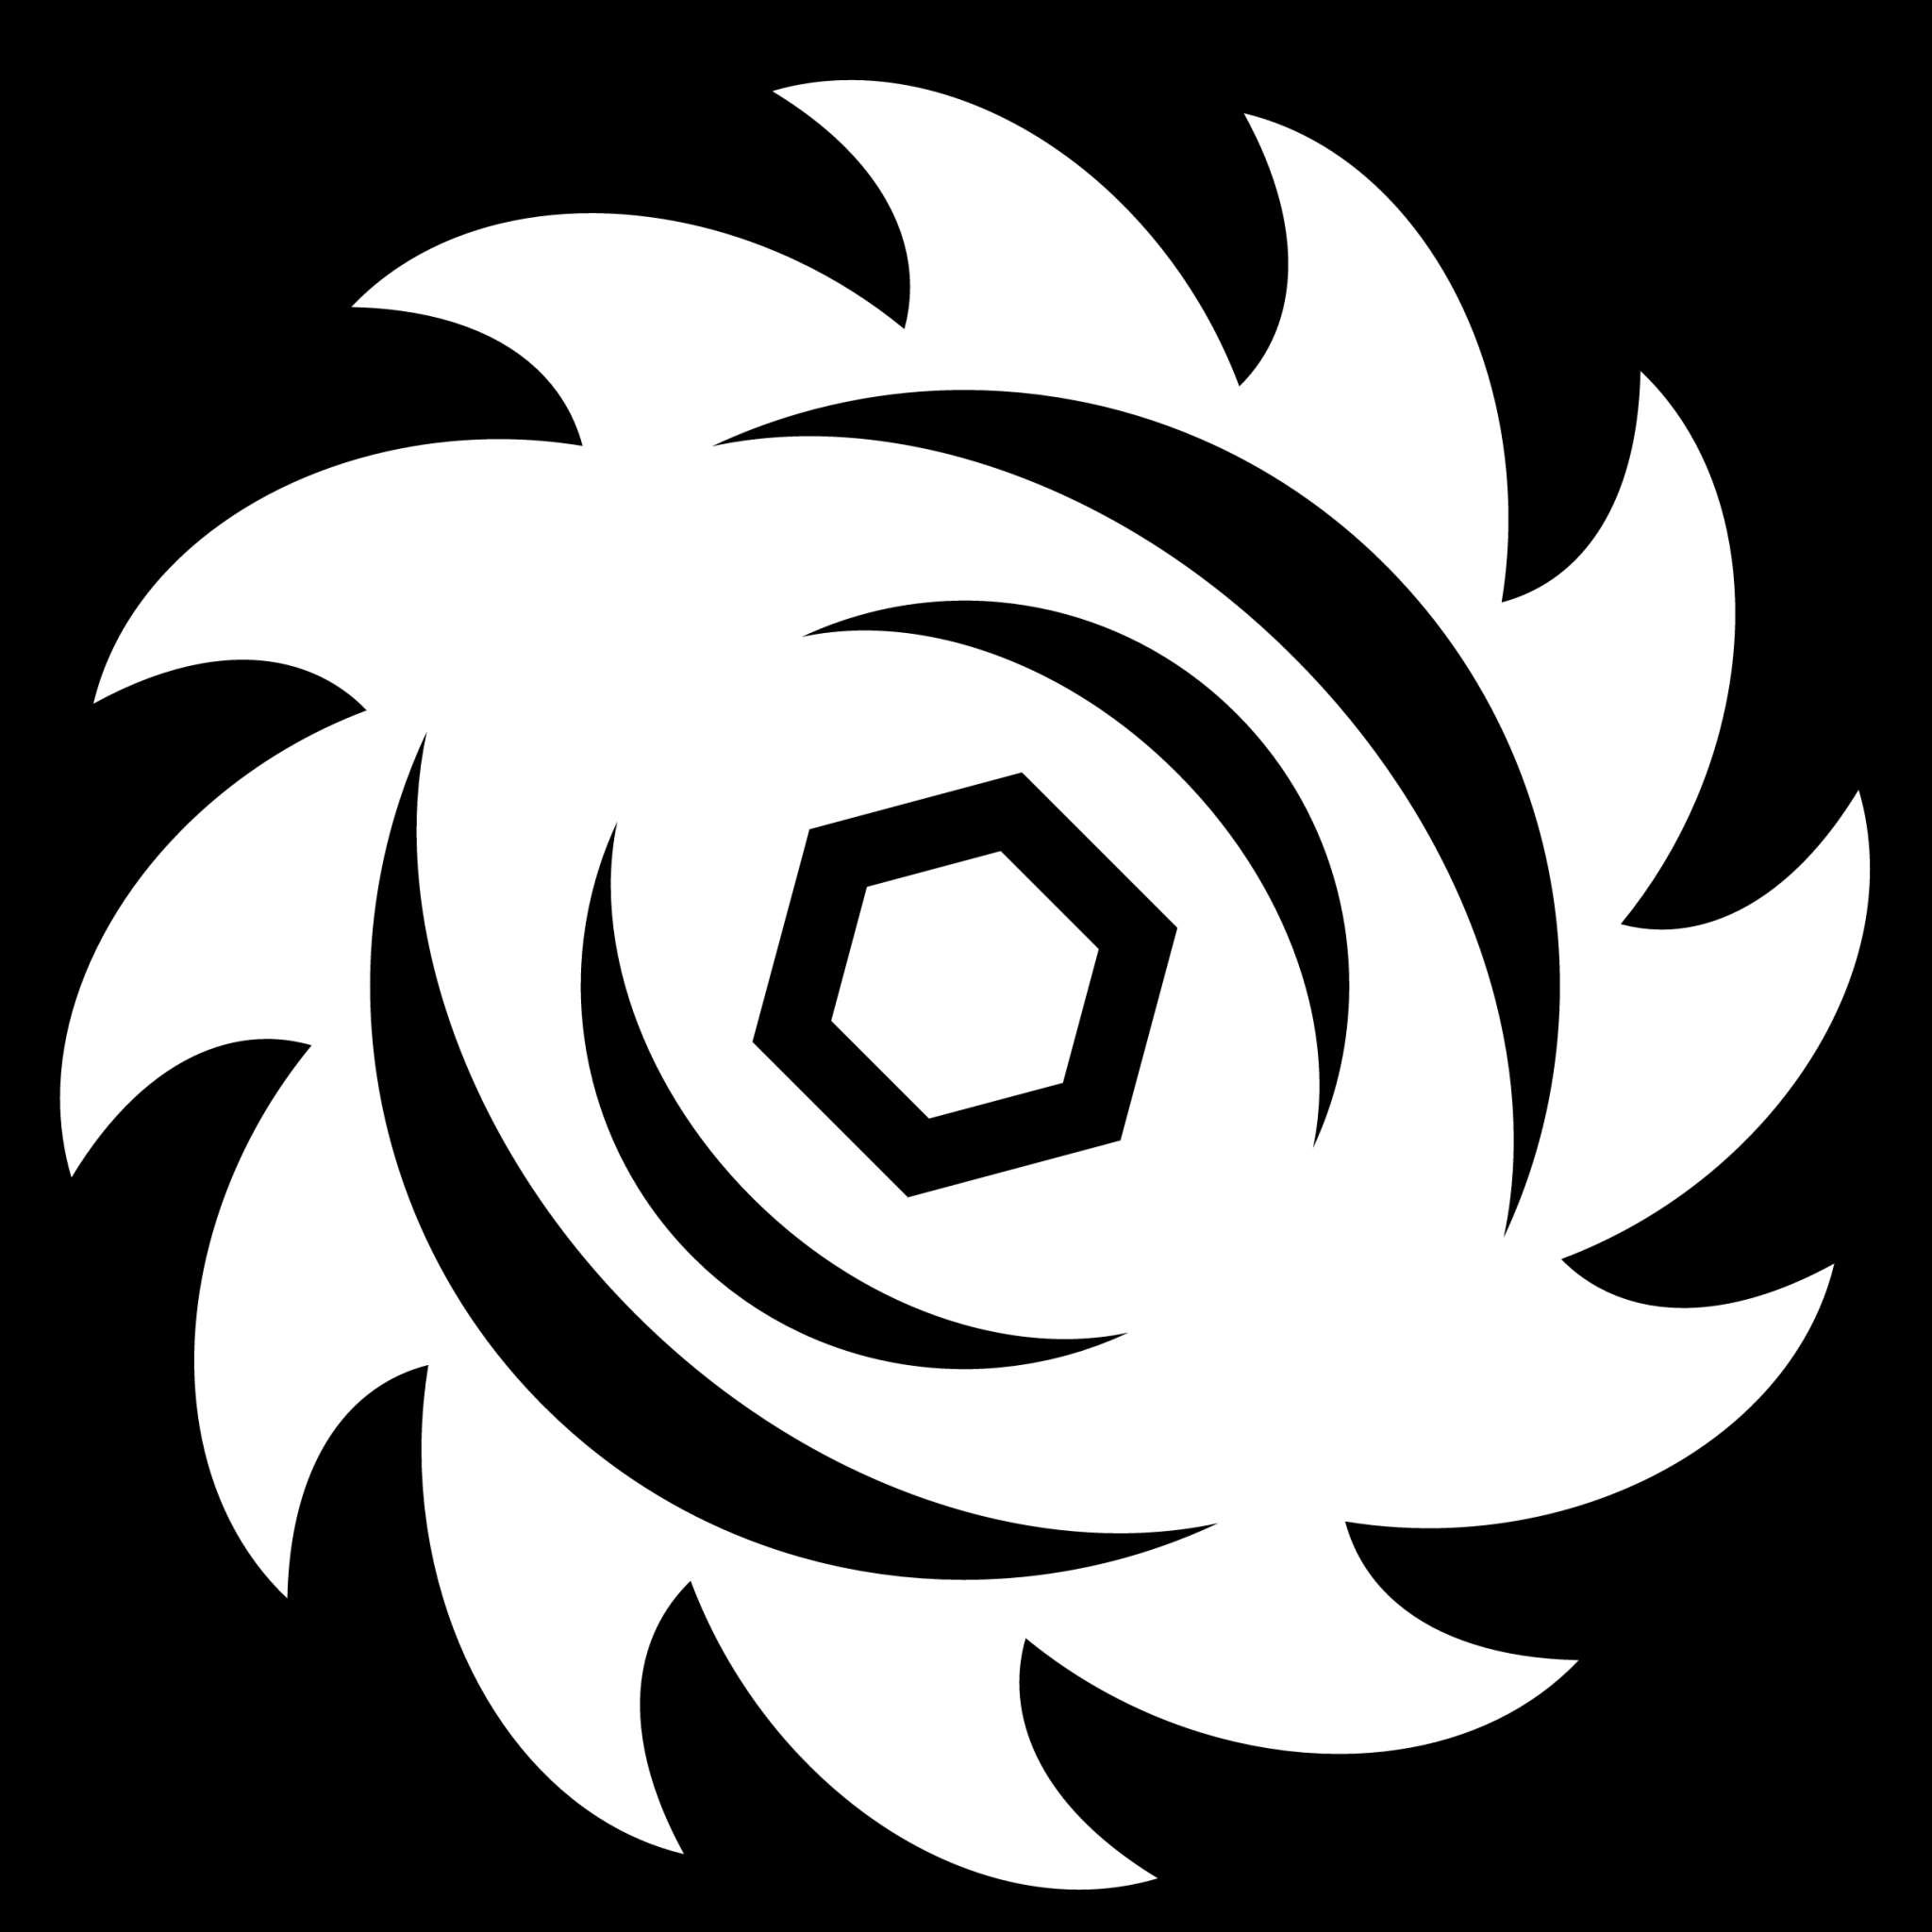 circular sawblade icon